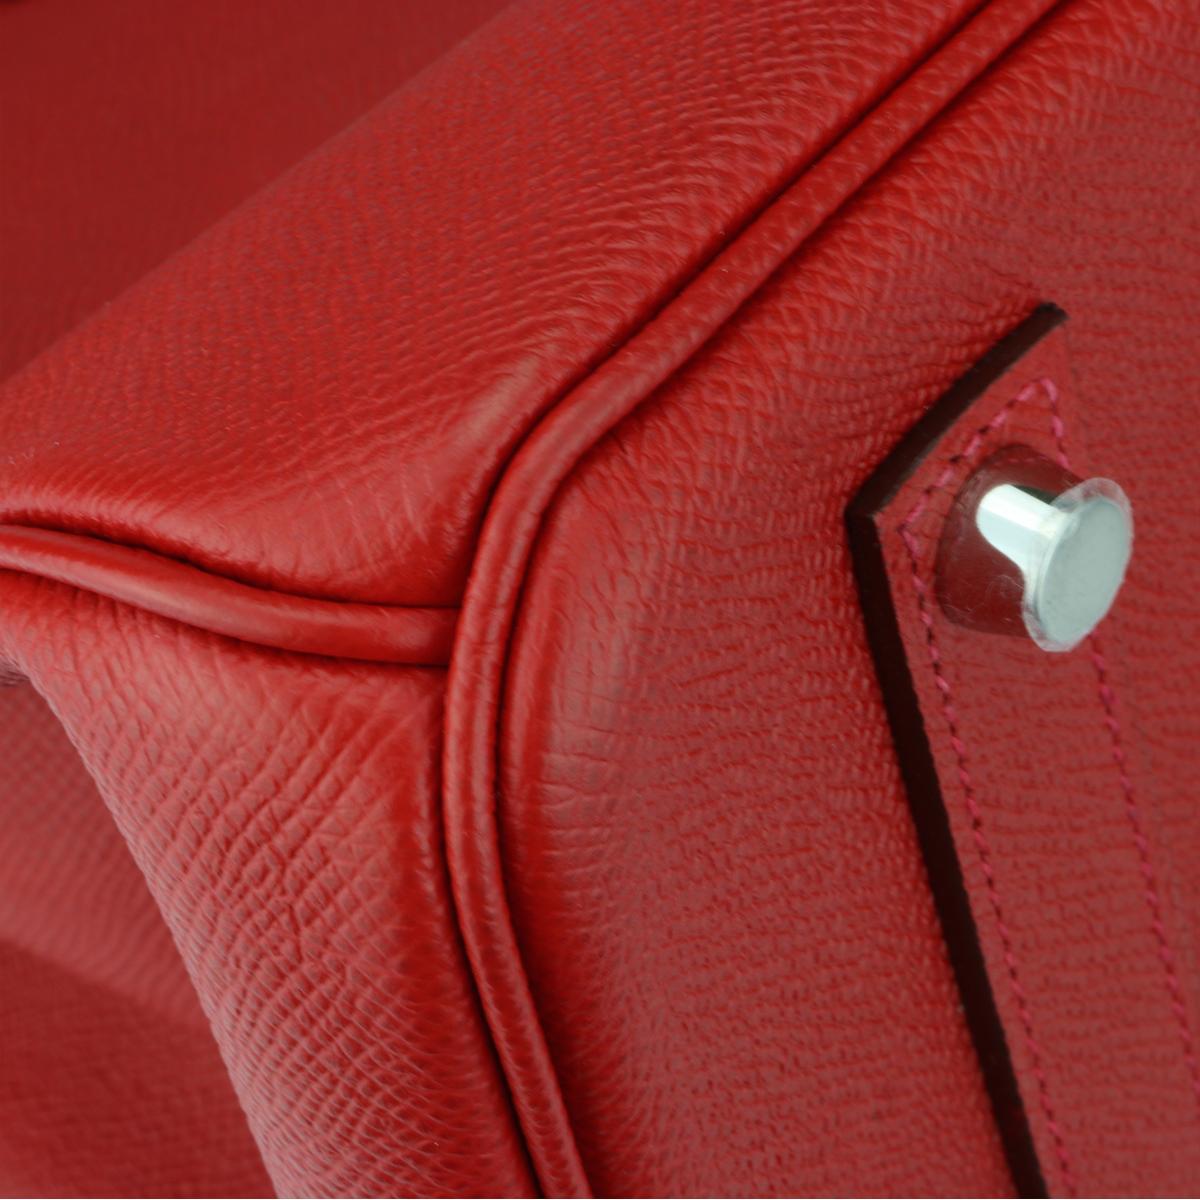 Hermès Birkin 35cm Q5 Rouge Casaque Epsom Leather with Palladium Hardware 2015 2